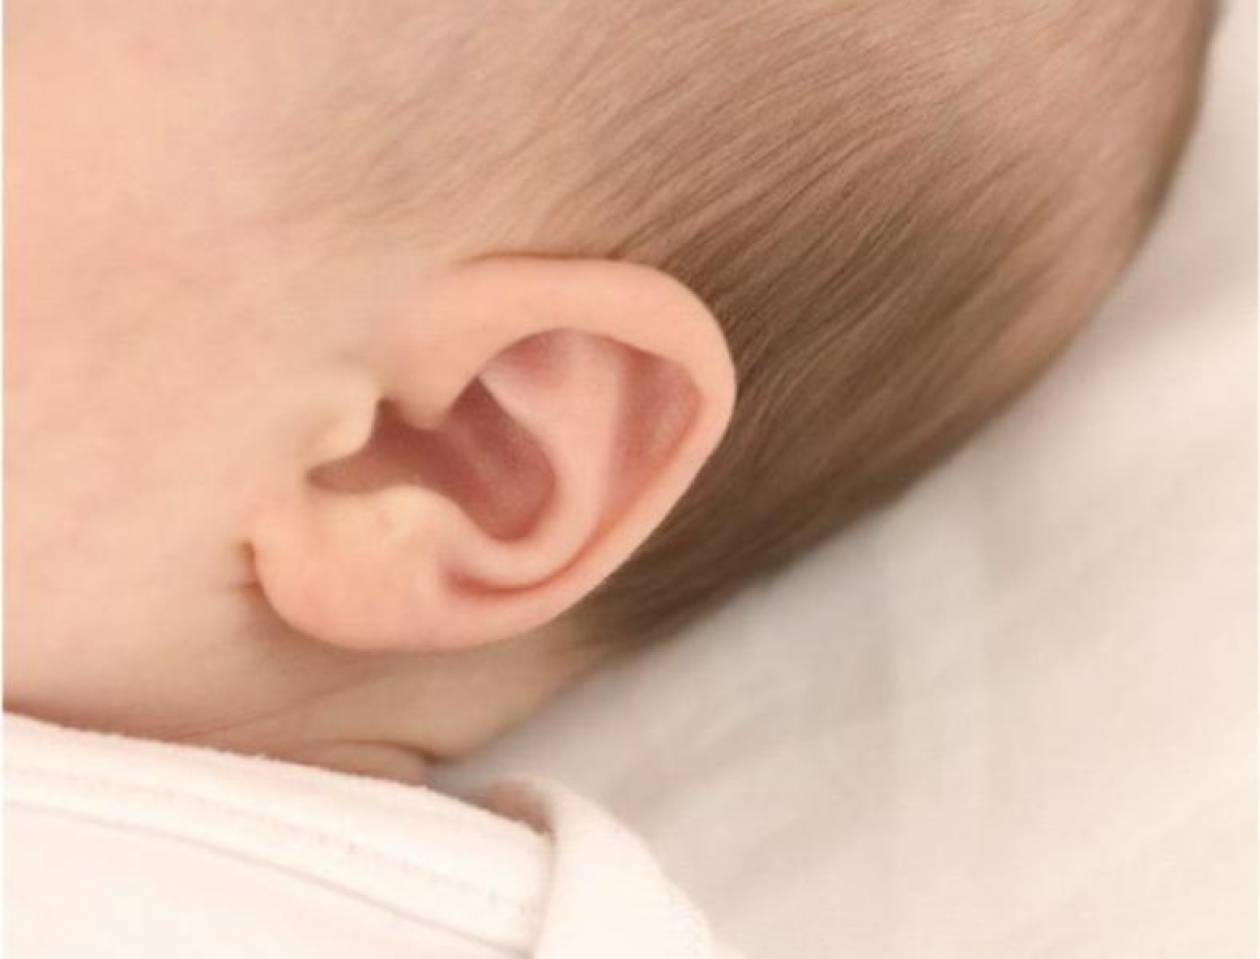 Έρευνα: Τα μωρά μπορούν να διακρίνουν φωνές μέσα στη μήτρα